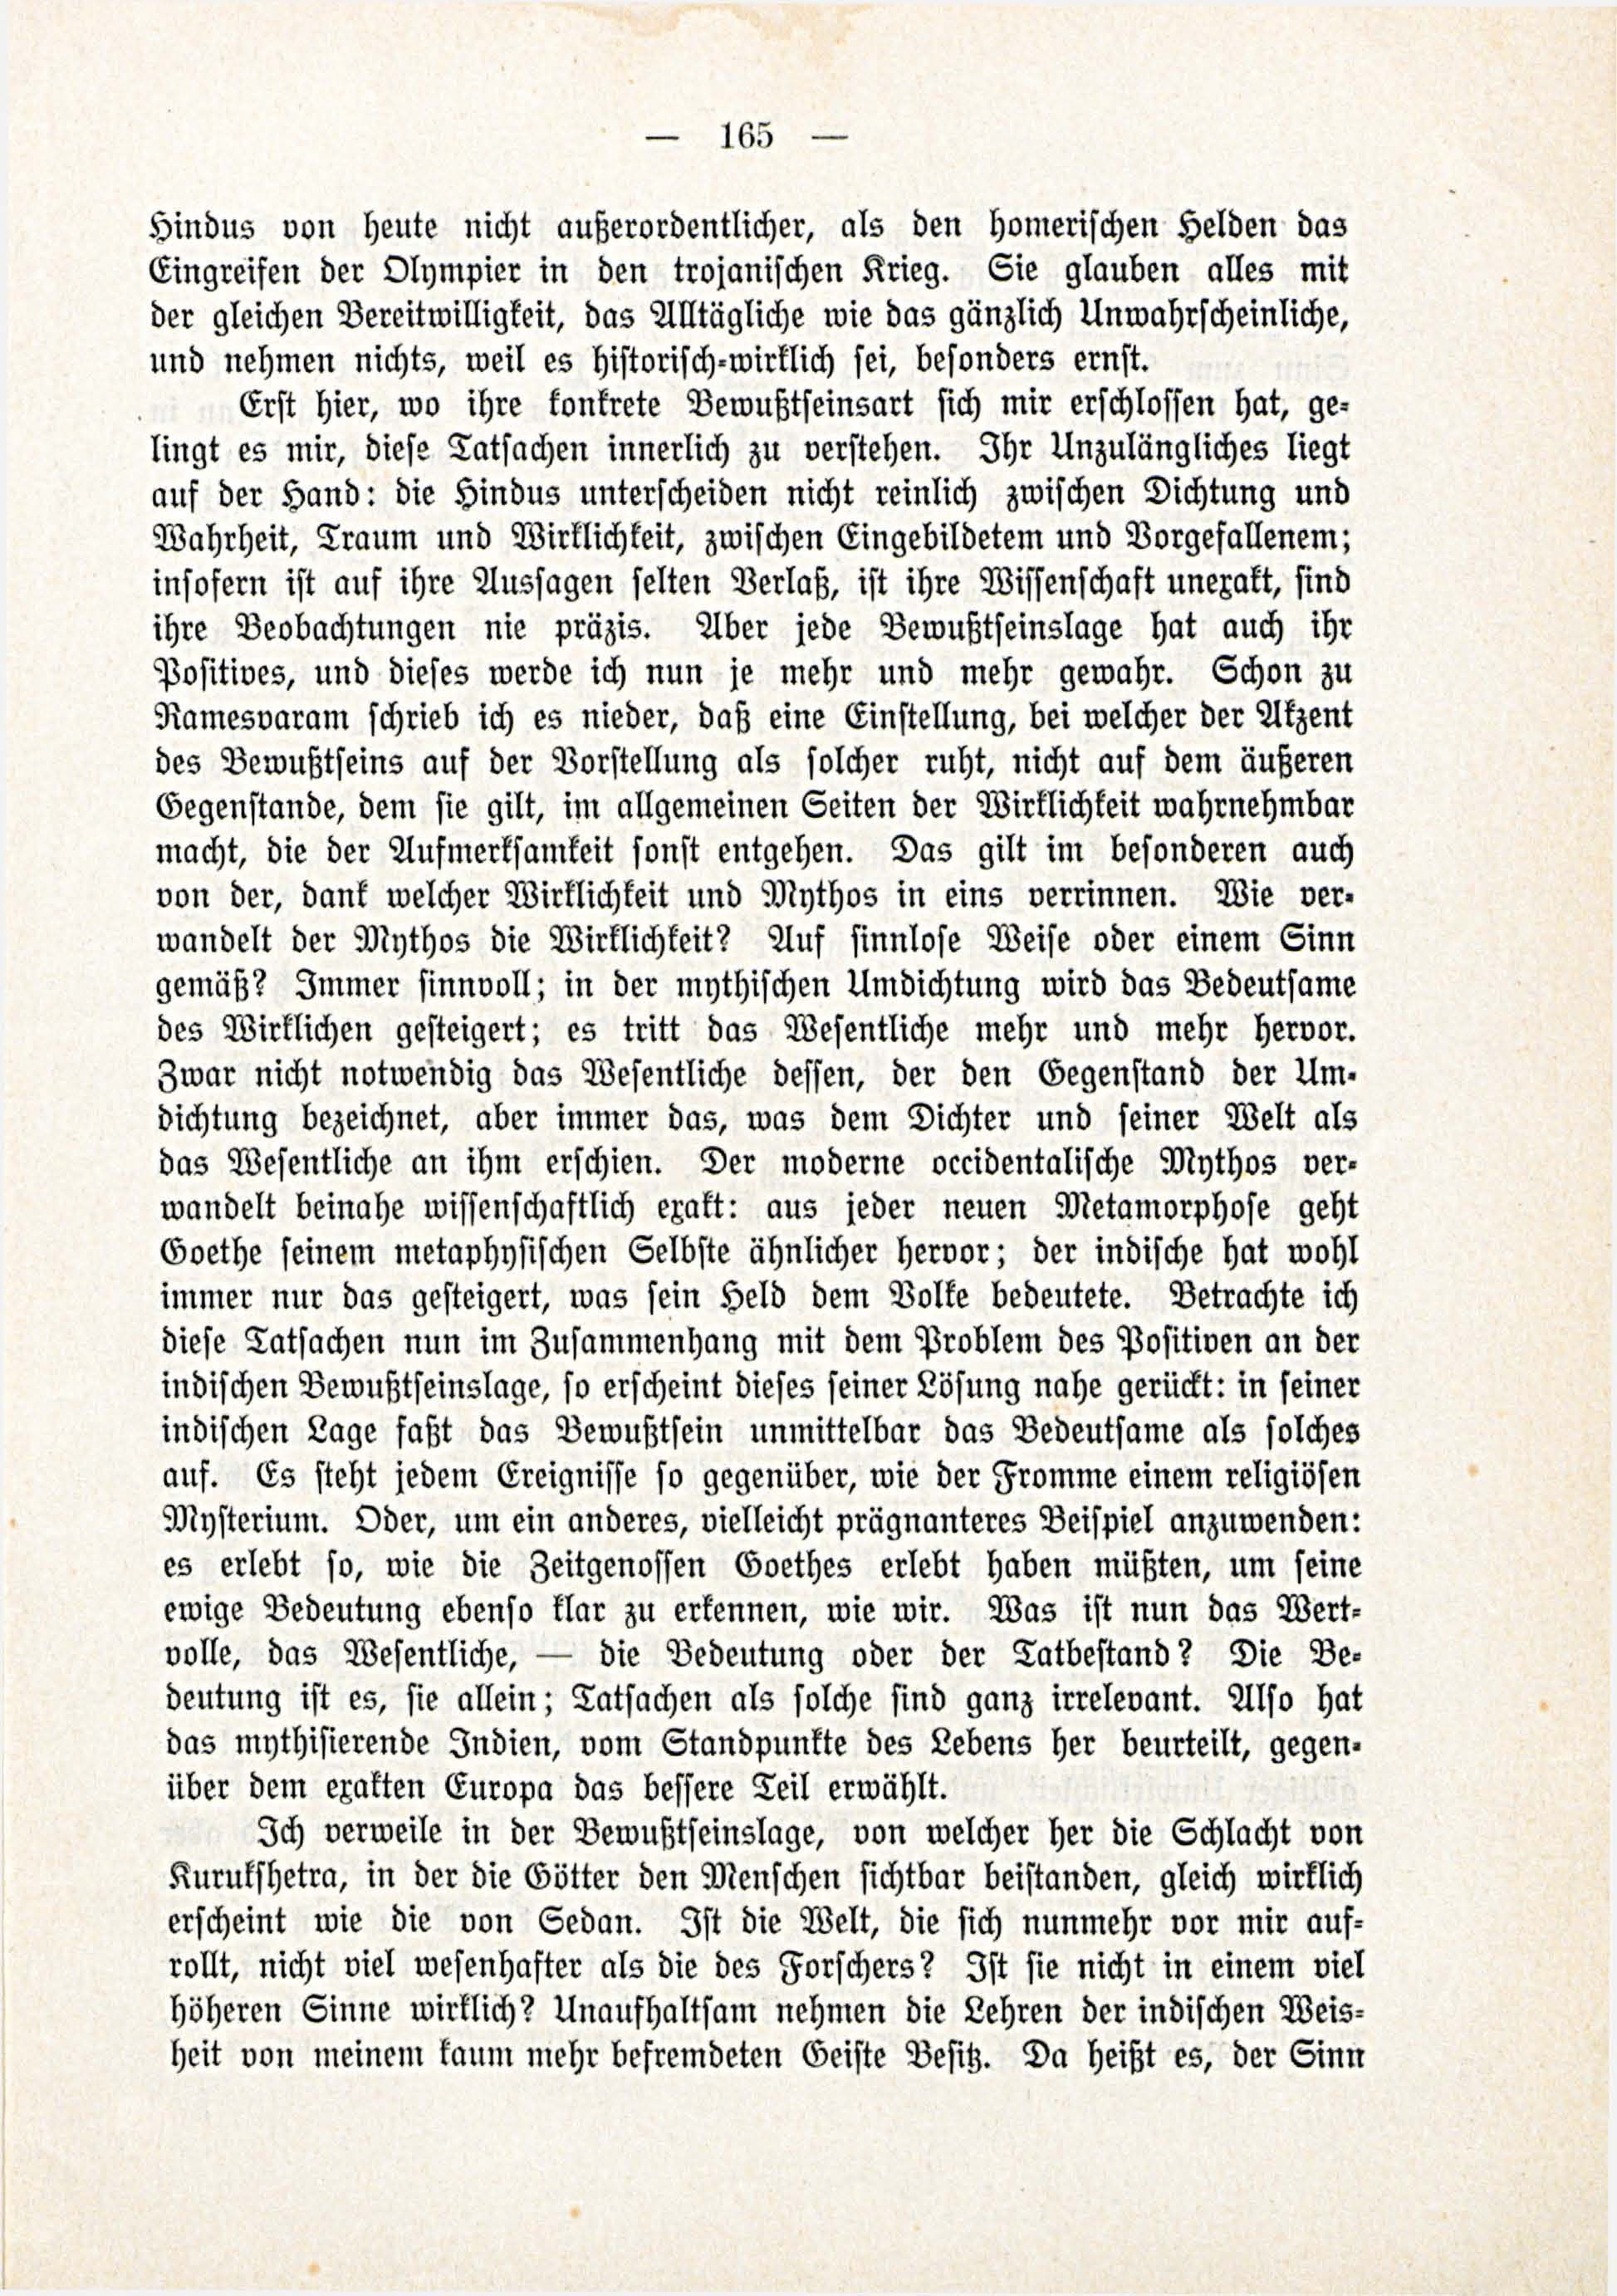 Deutsche Monatsschrift für Russland [3/03] (1914) | 11. (165) Haupttext